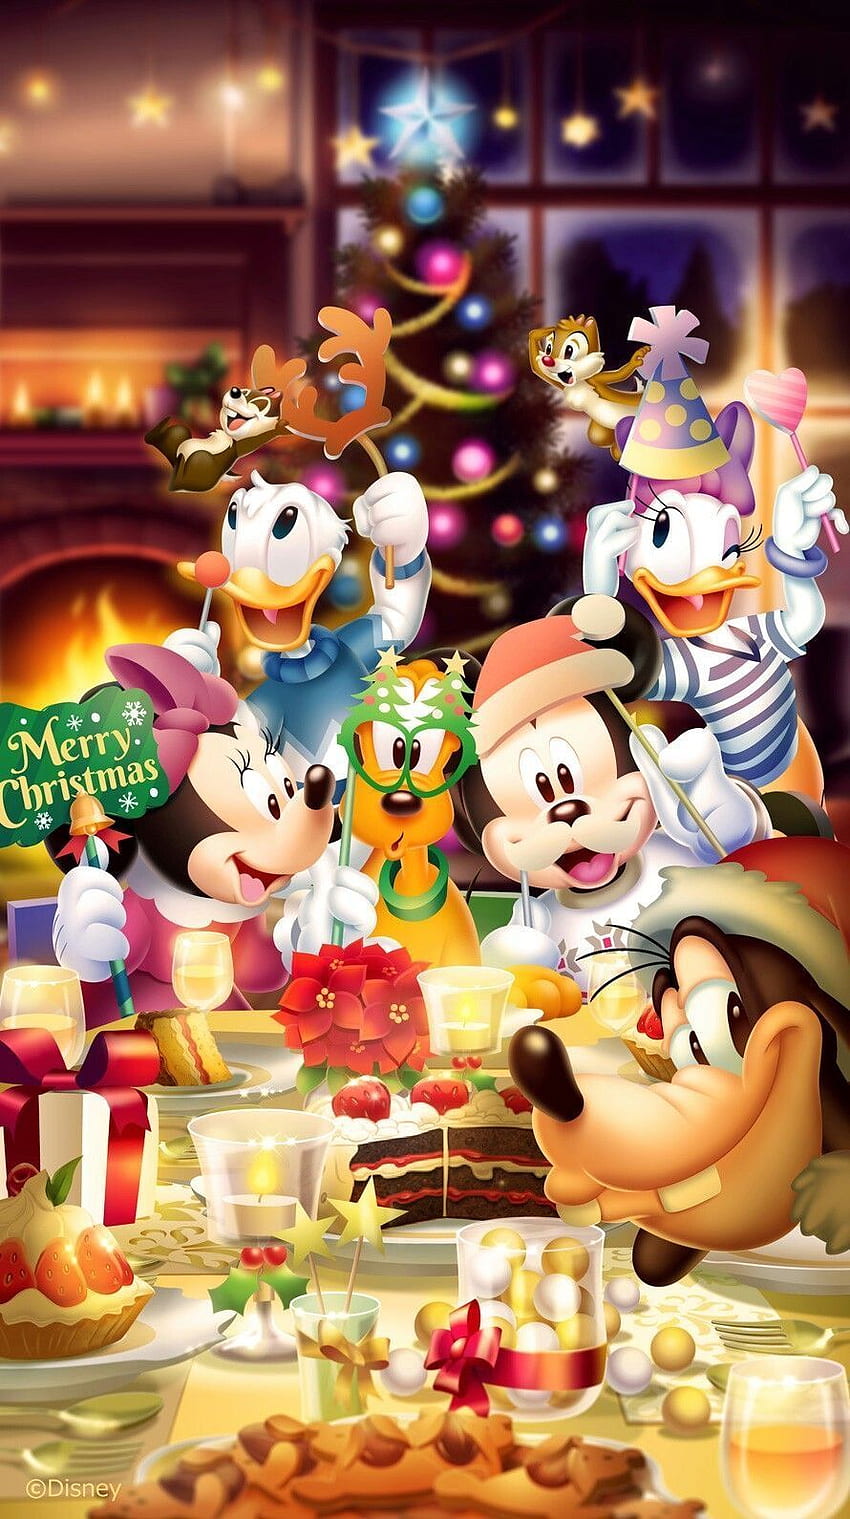 Noël Disney: Cùng đón một mùa đông thật tuyệt với cùng với các nhân vật Disney quen thuộc trong bộ sưu tập Noël Disney. Những hình ảnh đầy màu sắc và tinh nghịch sẽ đem đến cho bạn những giây phút giải trí vô cùng thú vị.